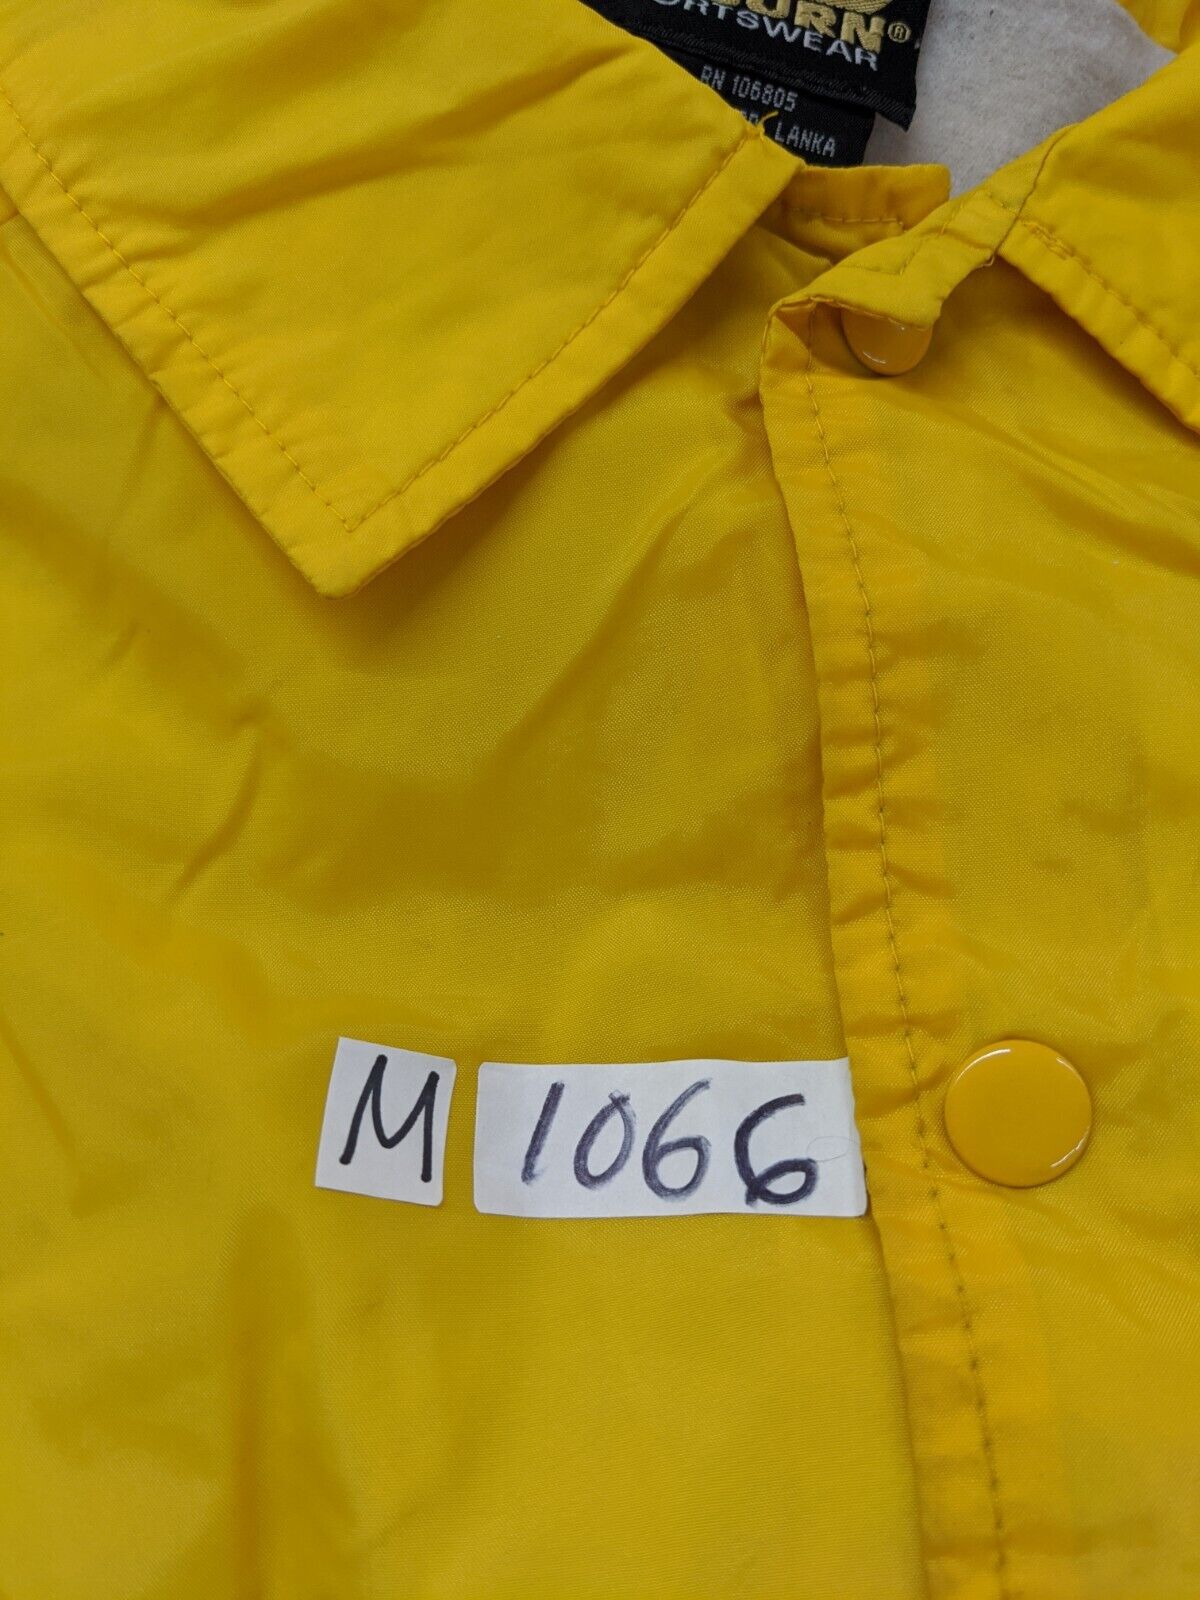 Auburn Sportswear Yellow Men's Windbreaker Jacket Coat Long Sleeve Size Large